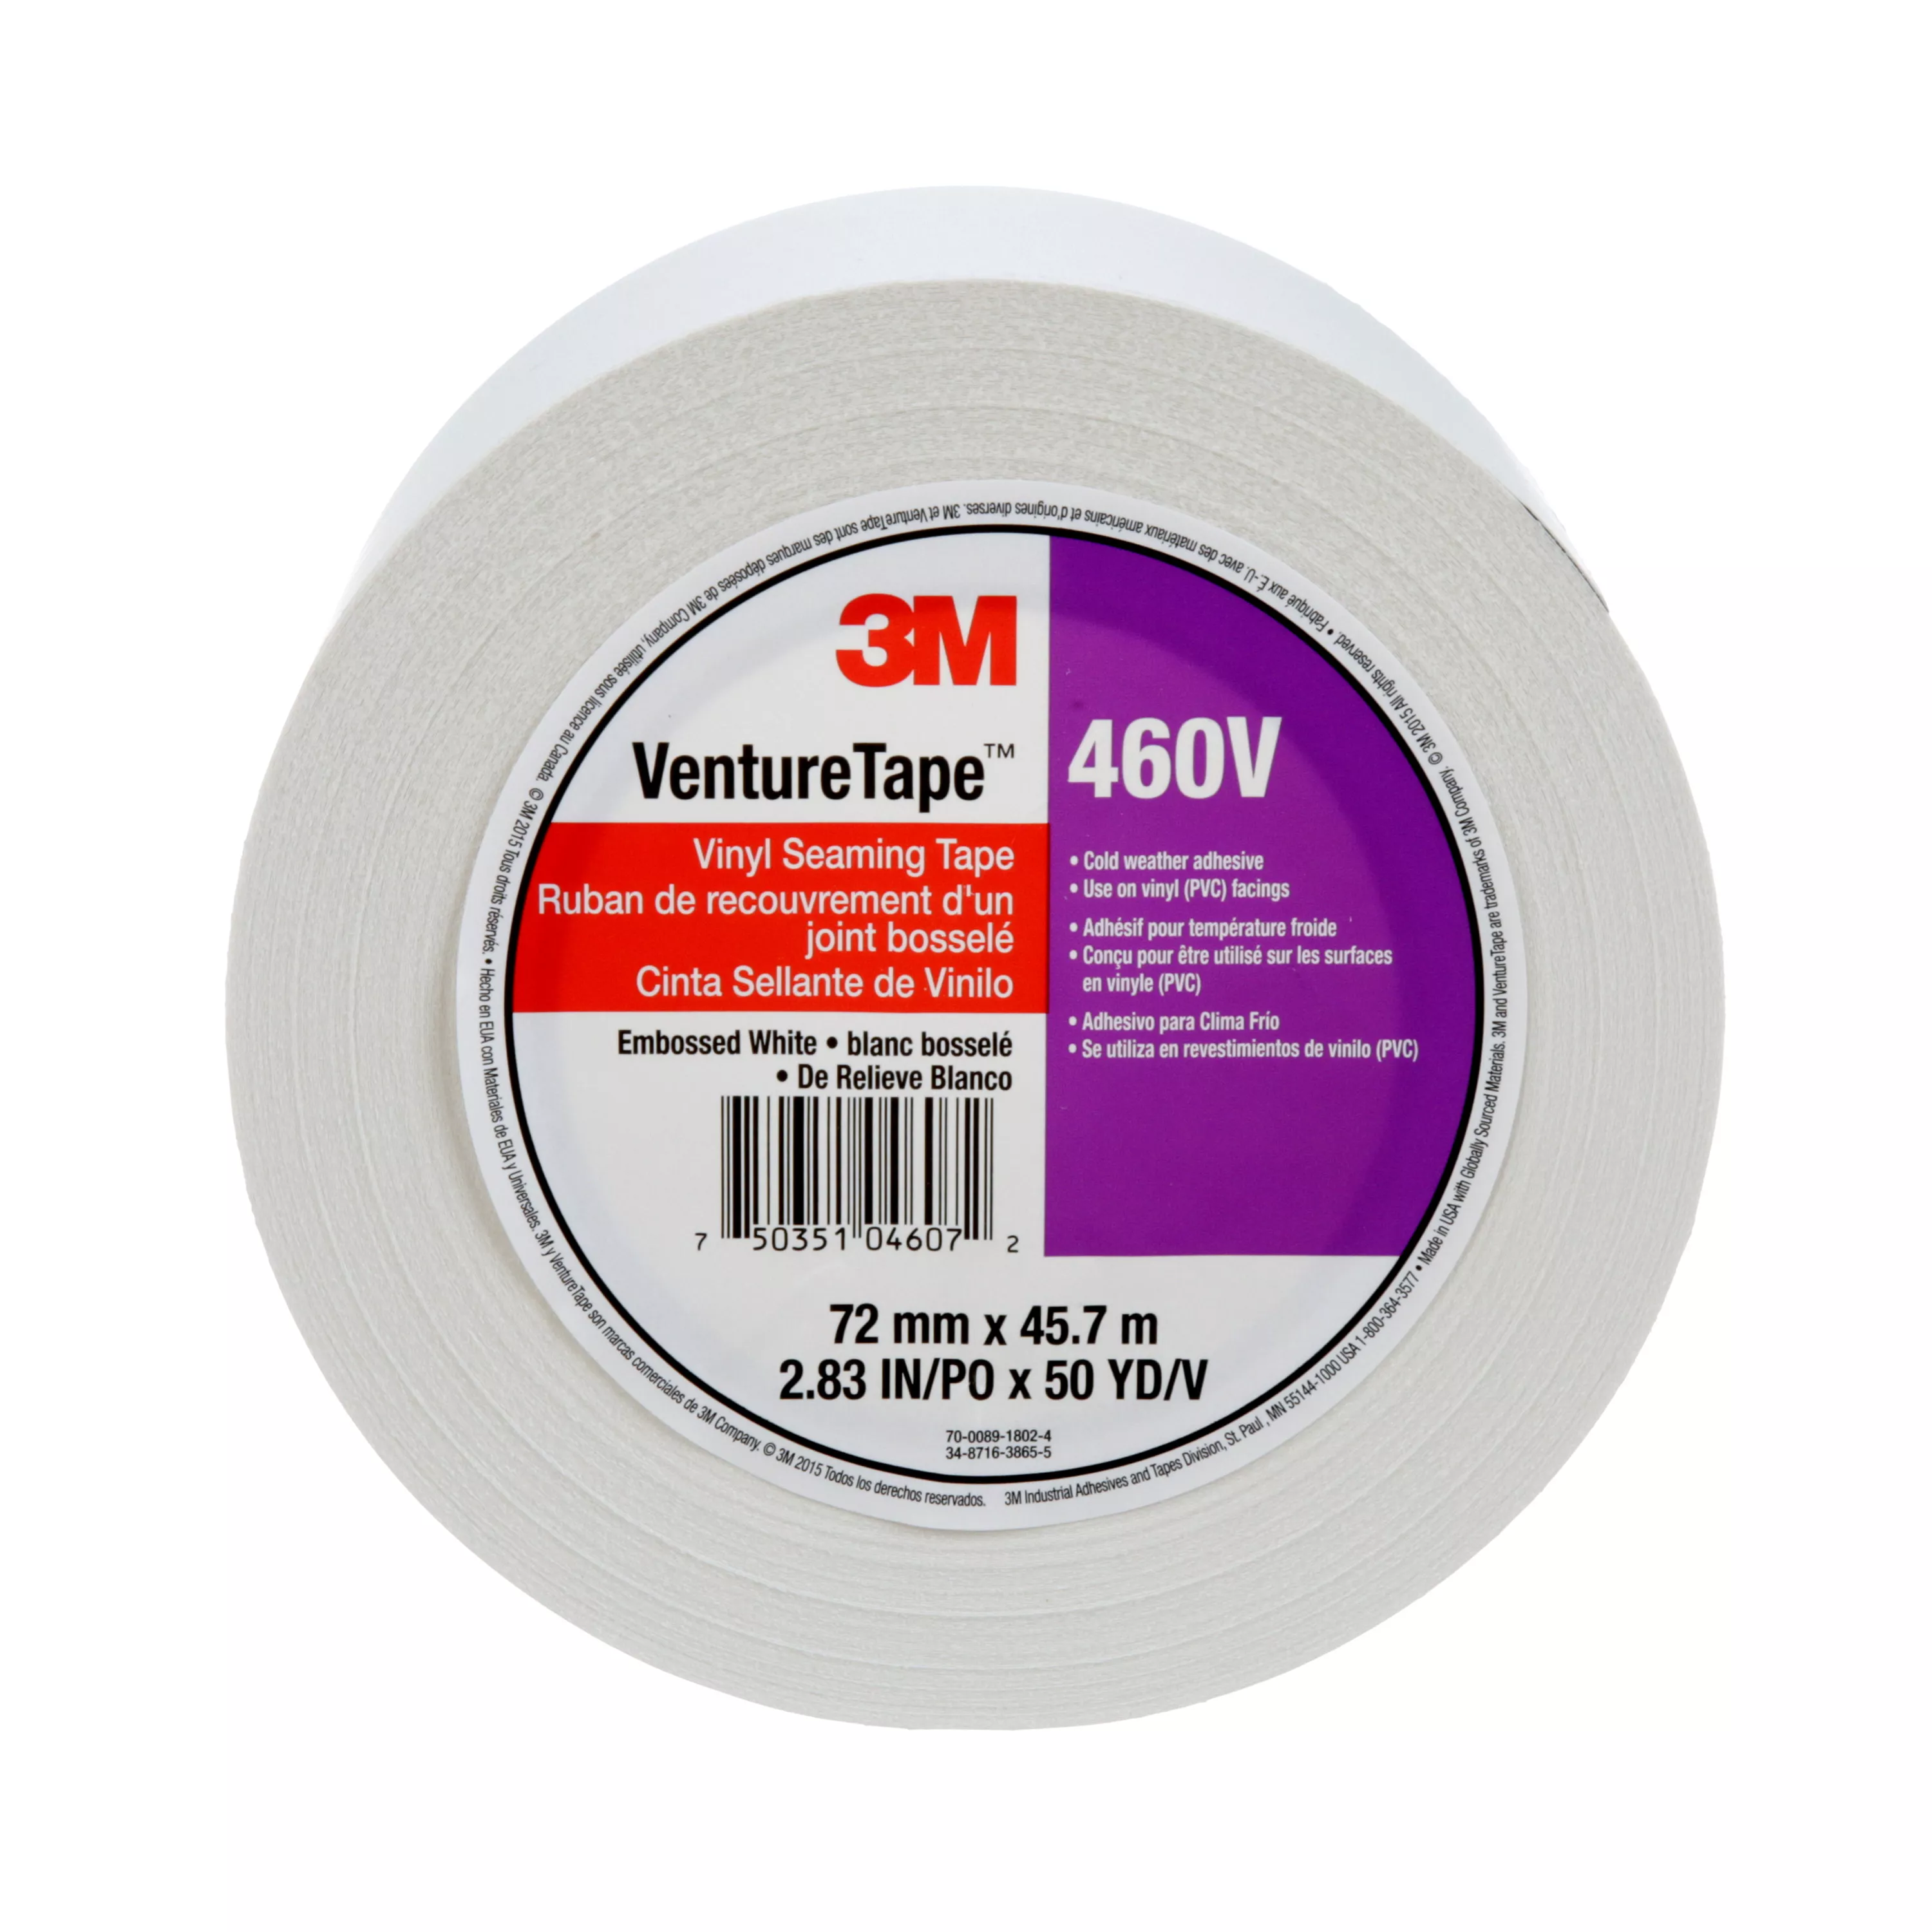 3M™ Venture Tape™ Vinyl Seaming Tape 460V, Embossed, White, 72 mm x 45.7
m, 16 Rolls/Case